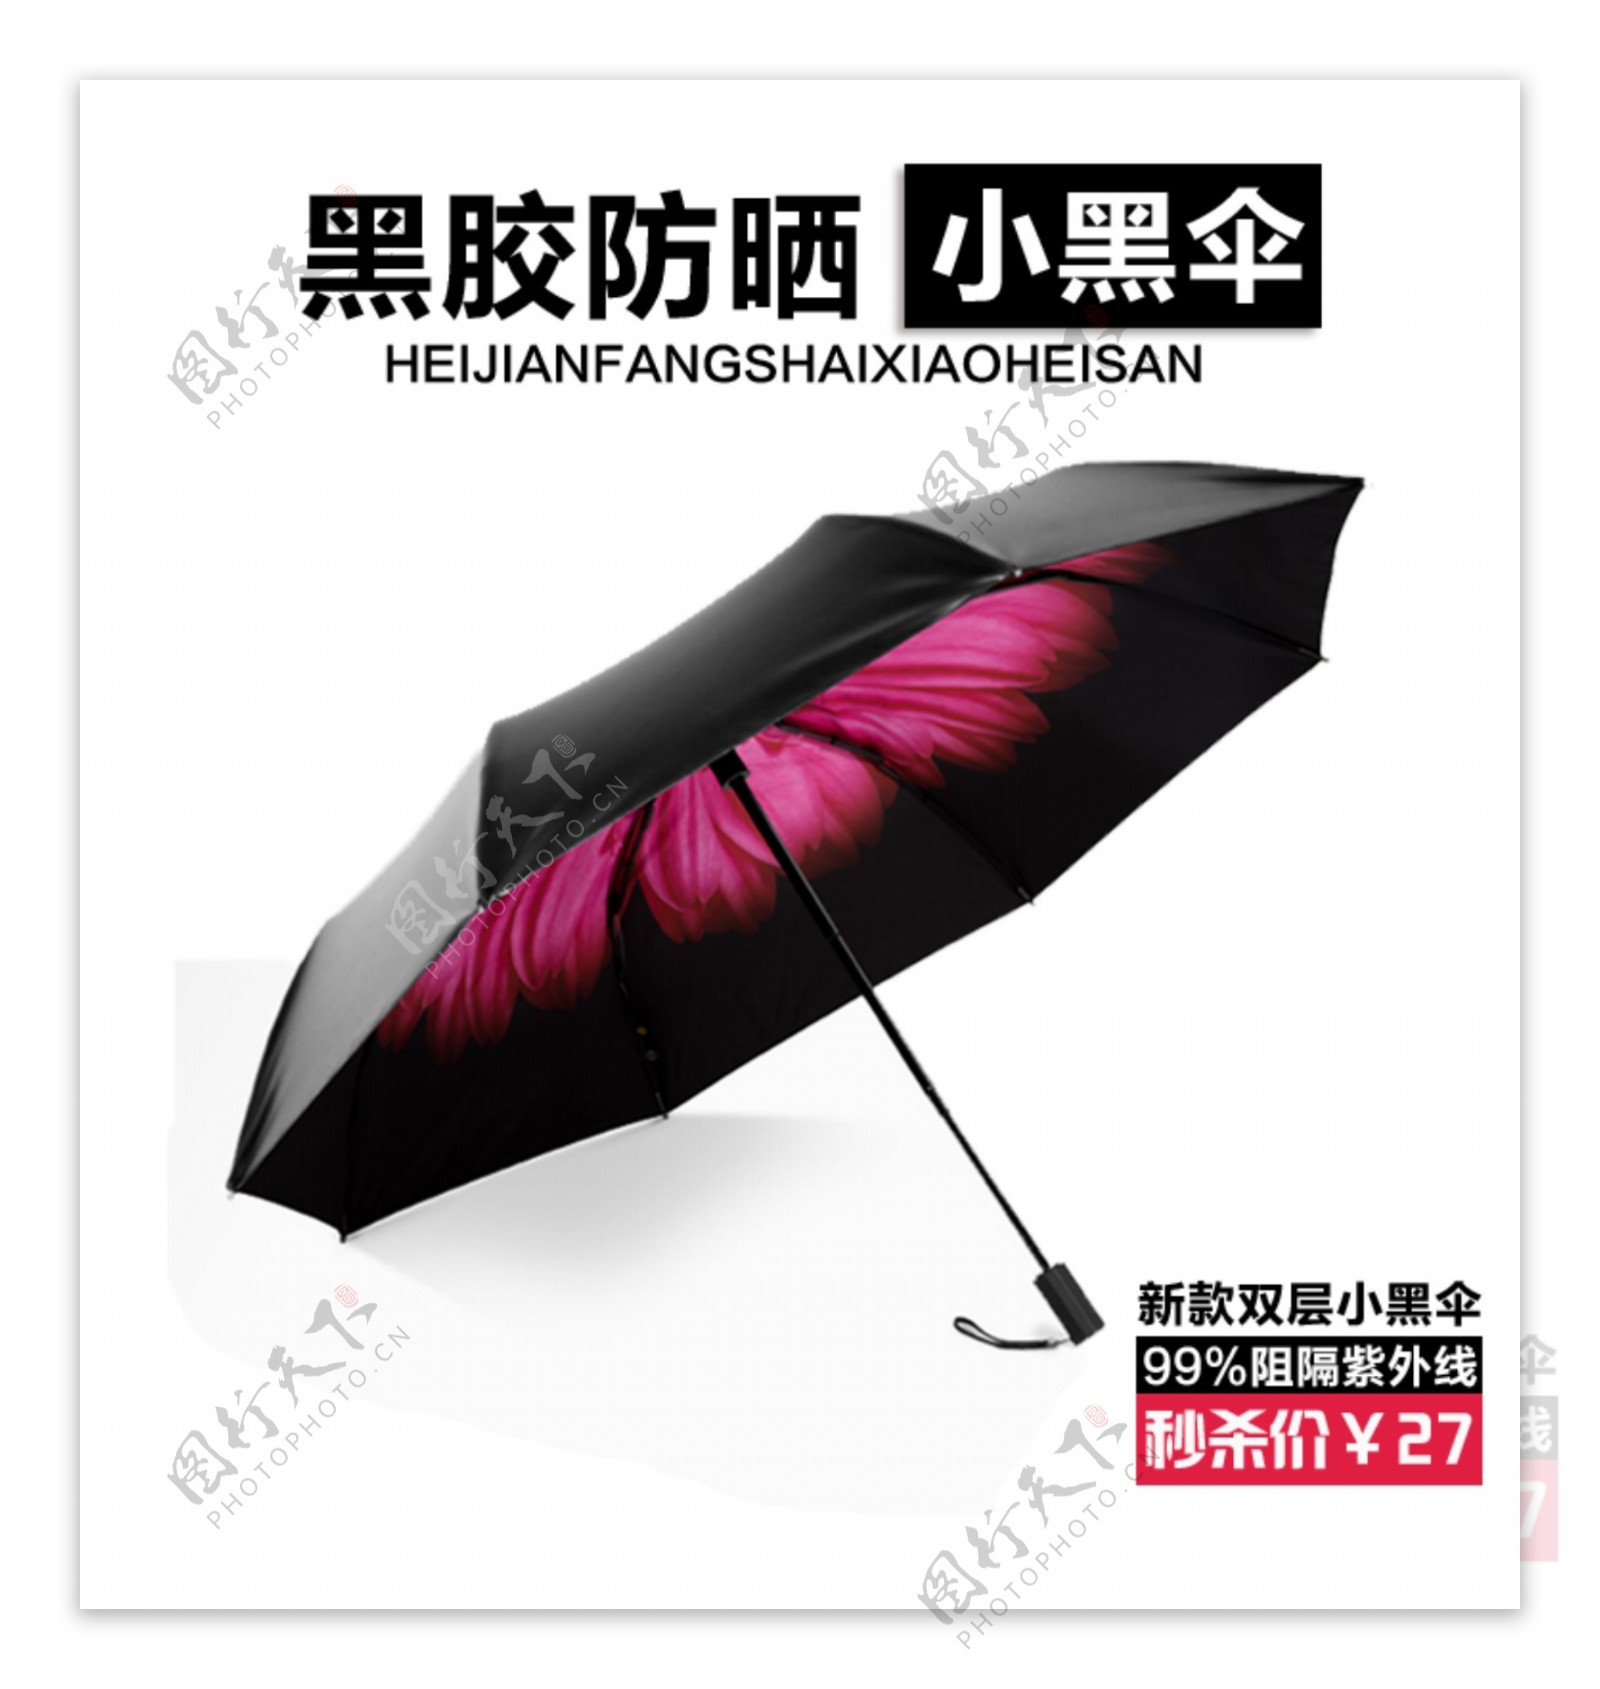 小黑伞雨伞